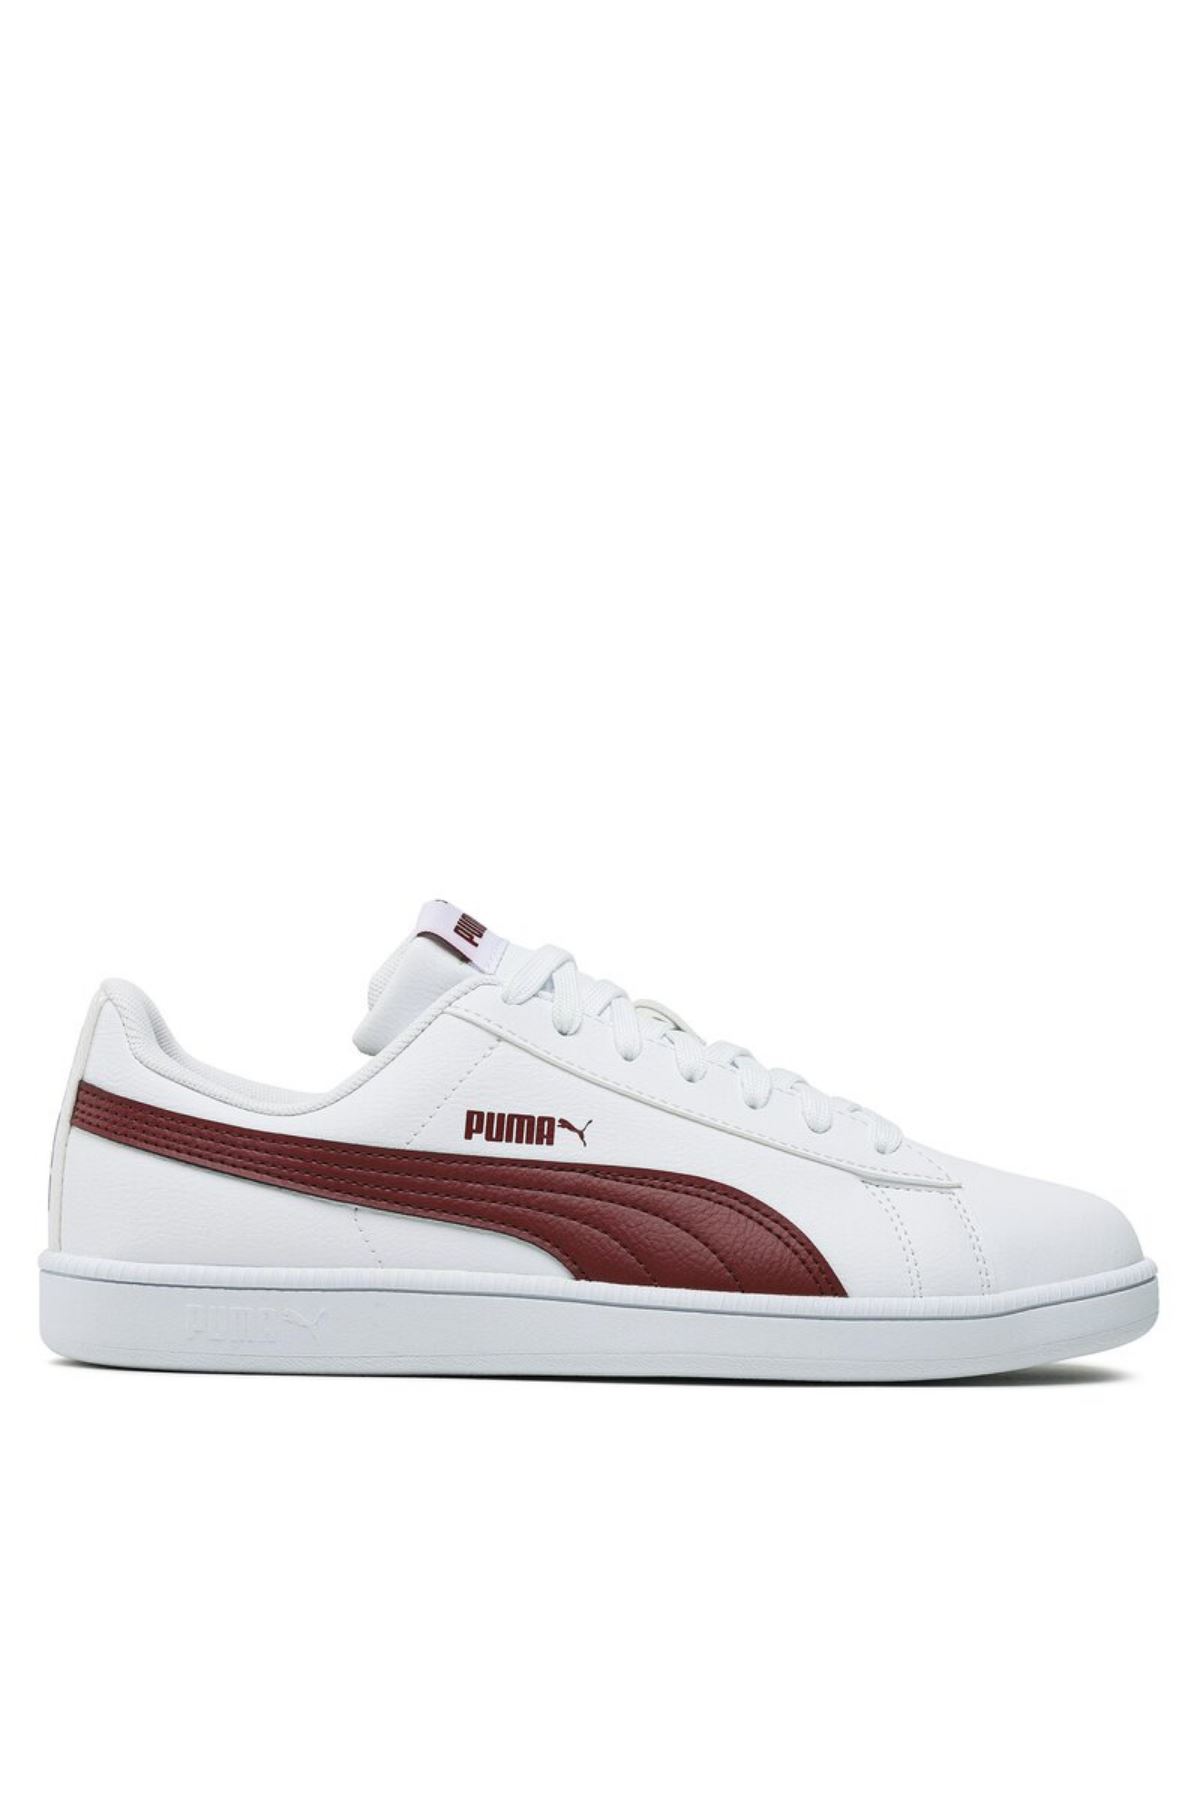 Puma Up Beyaz Spor Ayakkabı(372605-34)